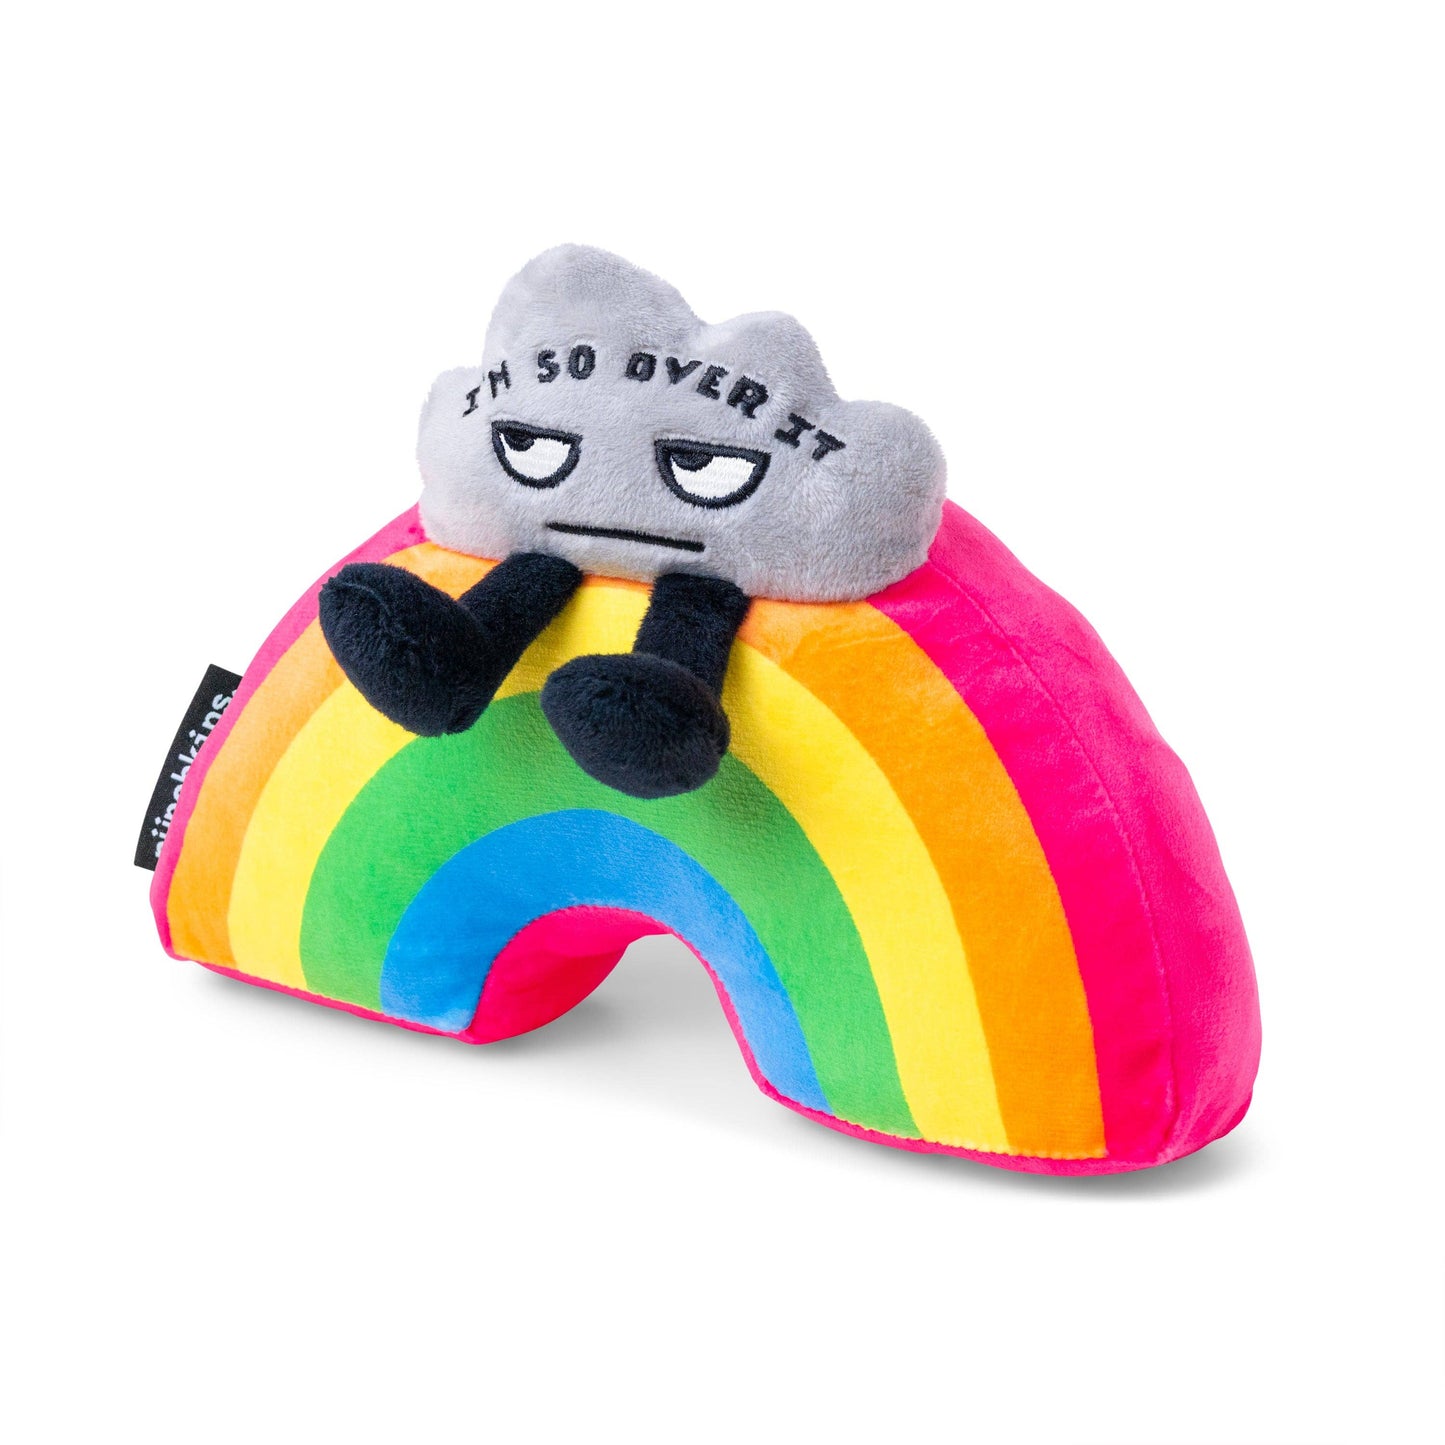 "I'm So Over It" Novelty Plush Rainbow Gift